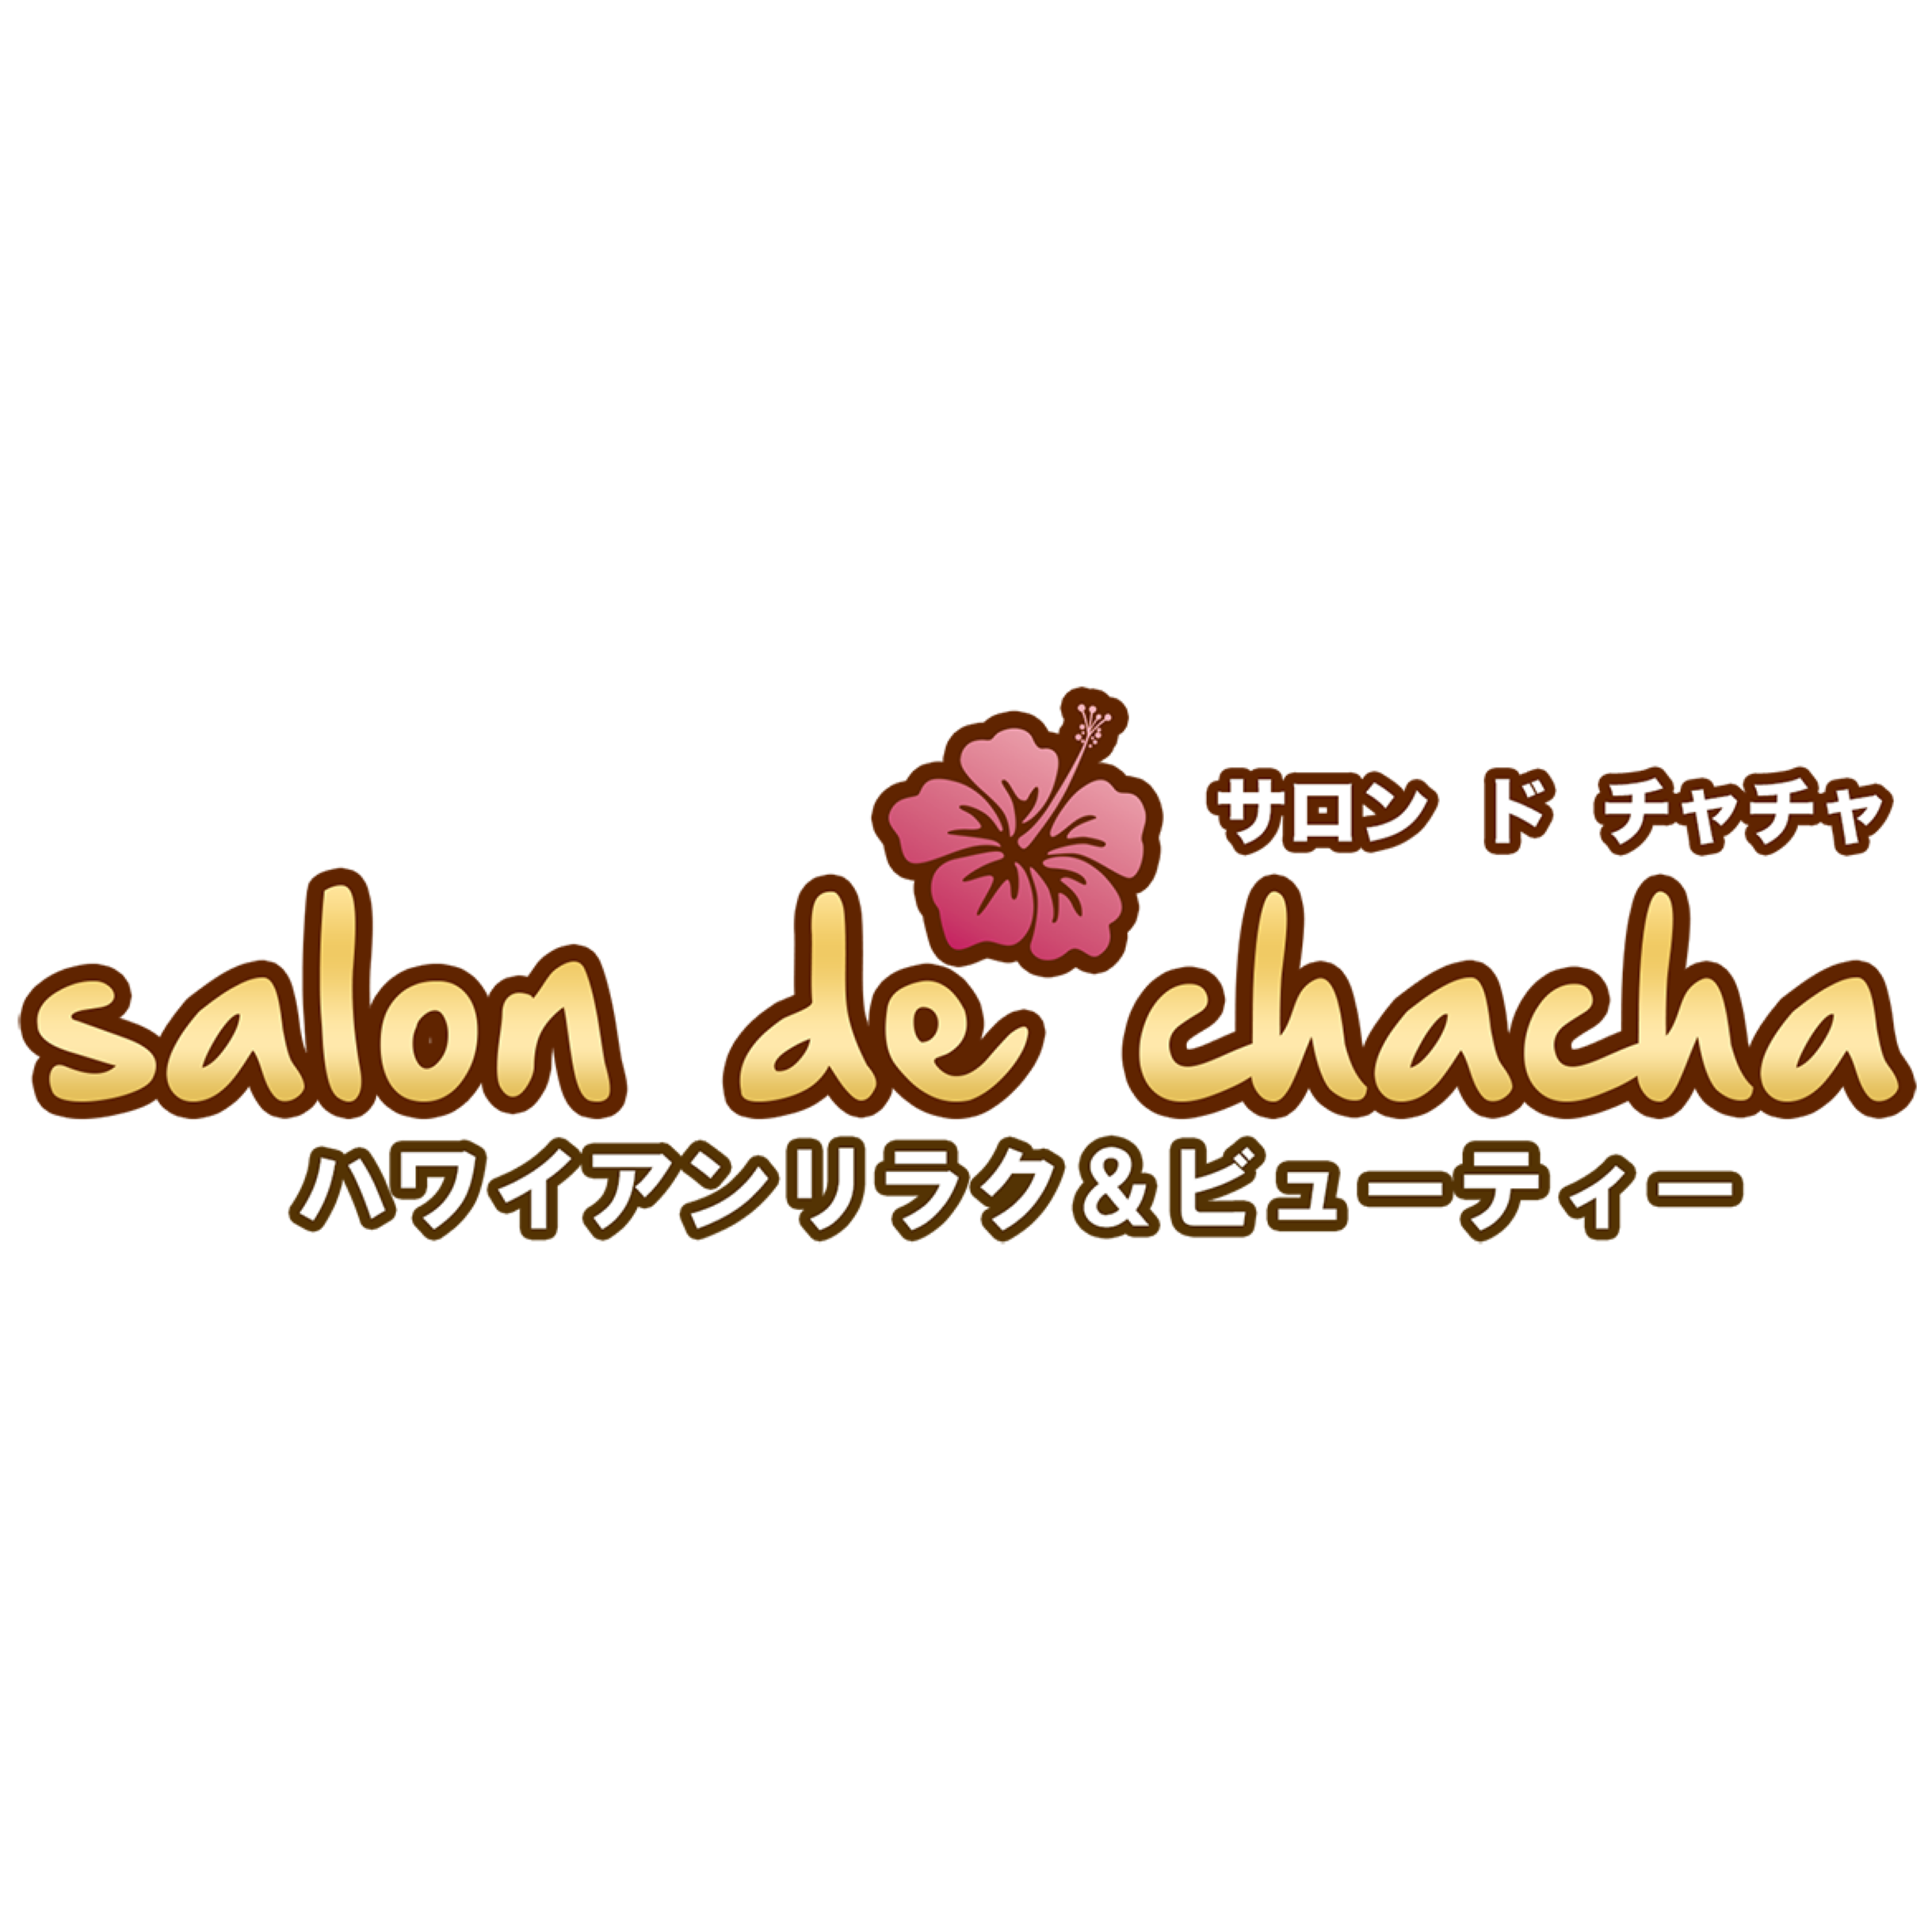 Salon de chacha 上大岡店〜ハワイアンリラク＆ビューティー〜 Logo